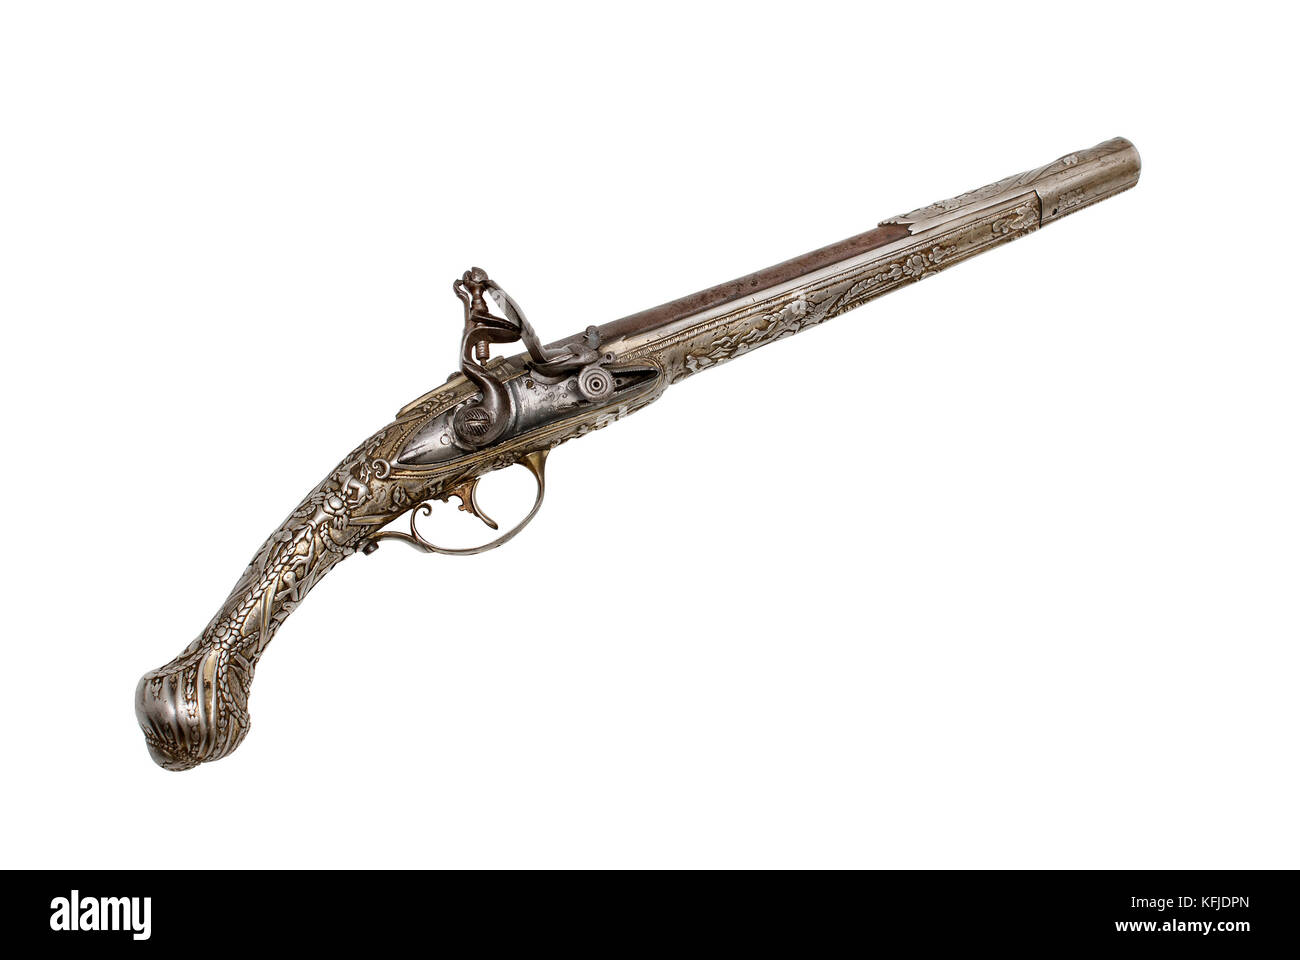 Bell'esempio decorato di pistola di pietra focaia. Fine del 1800-inizio del XIX secolo. Le armi balcan erano popolari in altri paesi europei ( Foto Stock